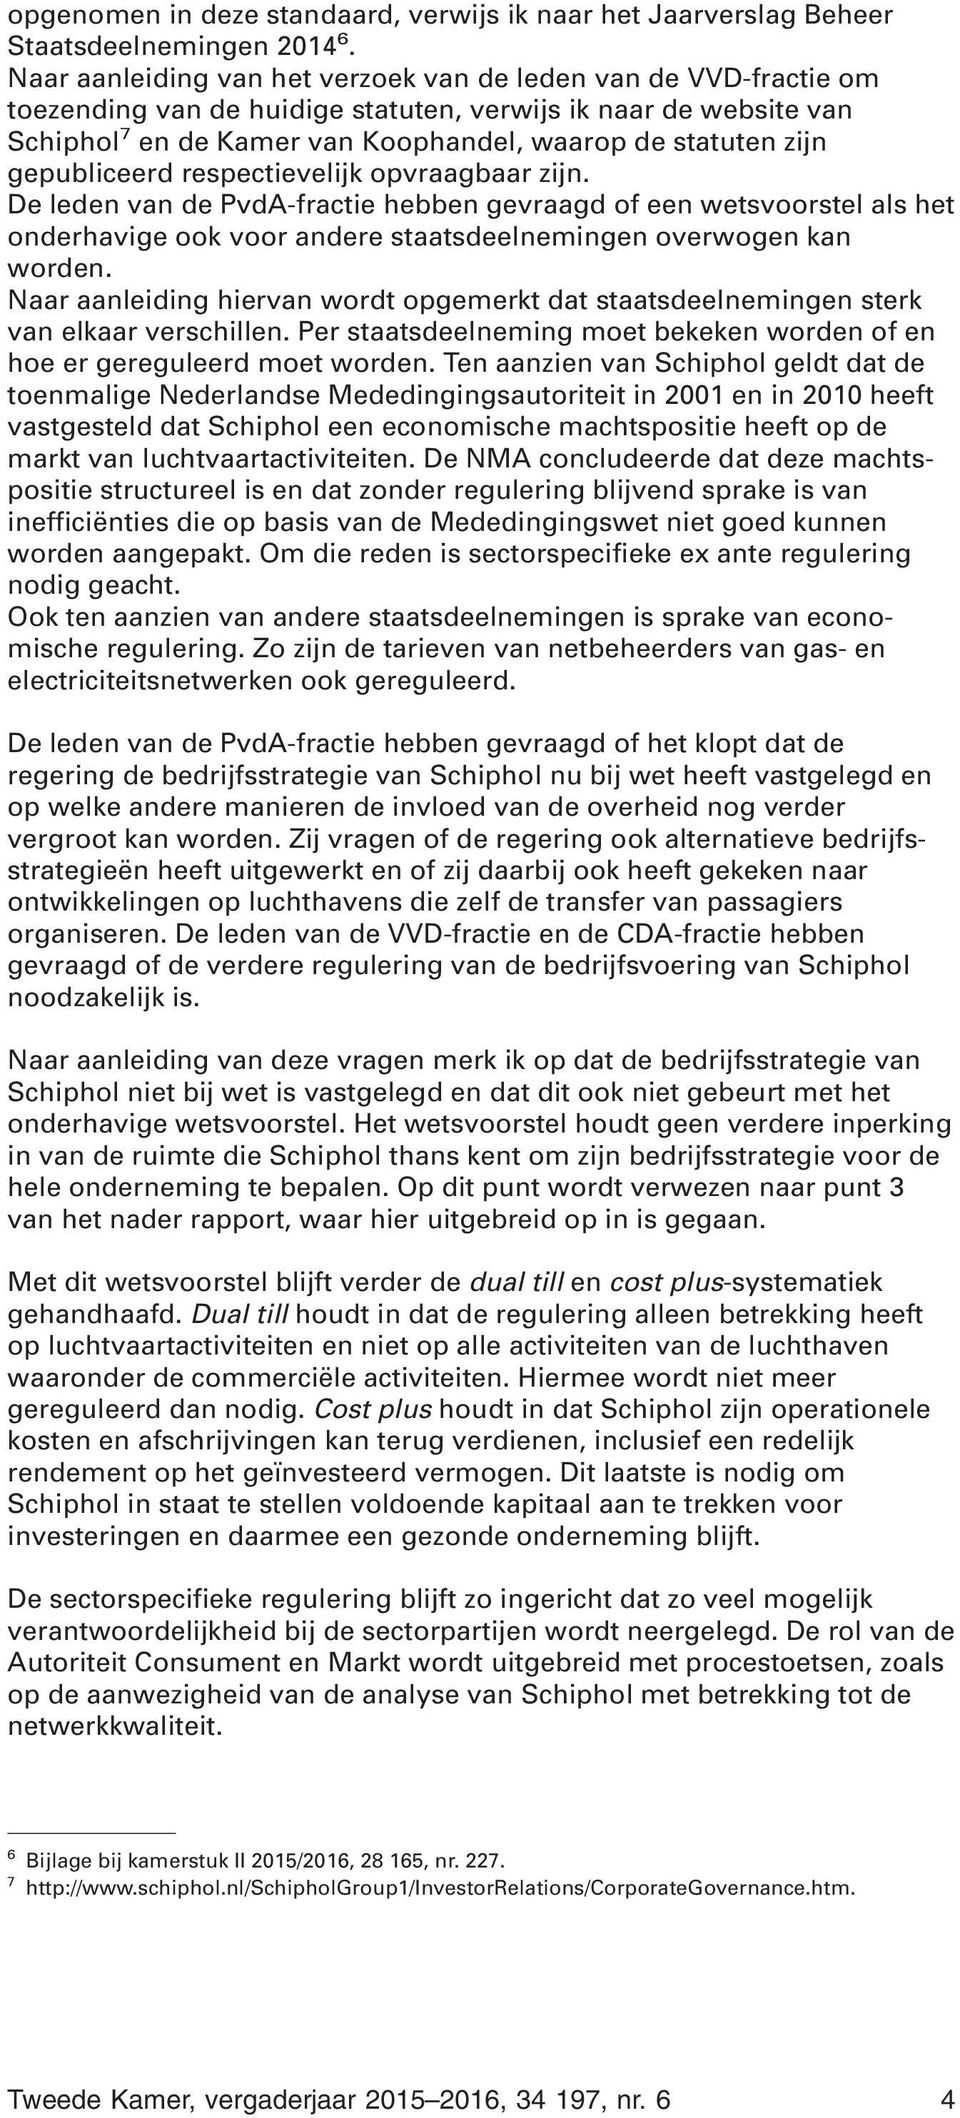 gepubliceerd respectievelijk opvraagbaar zijn. De leden van de PvdA-fractie hebben gevraagd of een wetsvoorstel als het onderhavige ook voor andere staatsdeelnemingen overwogen kan worden.